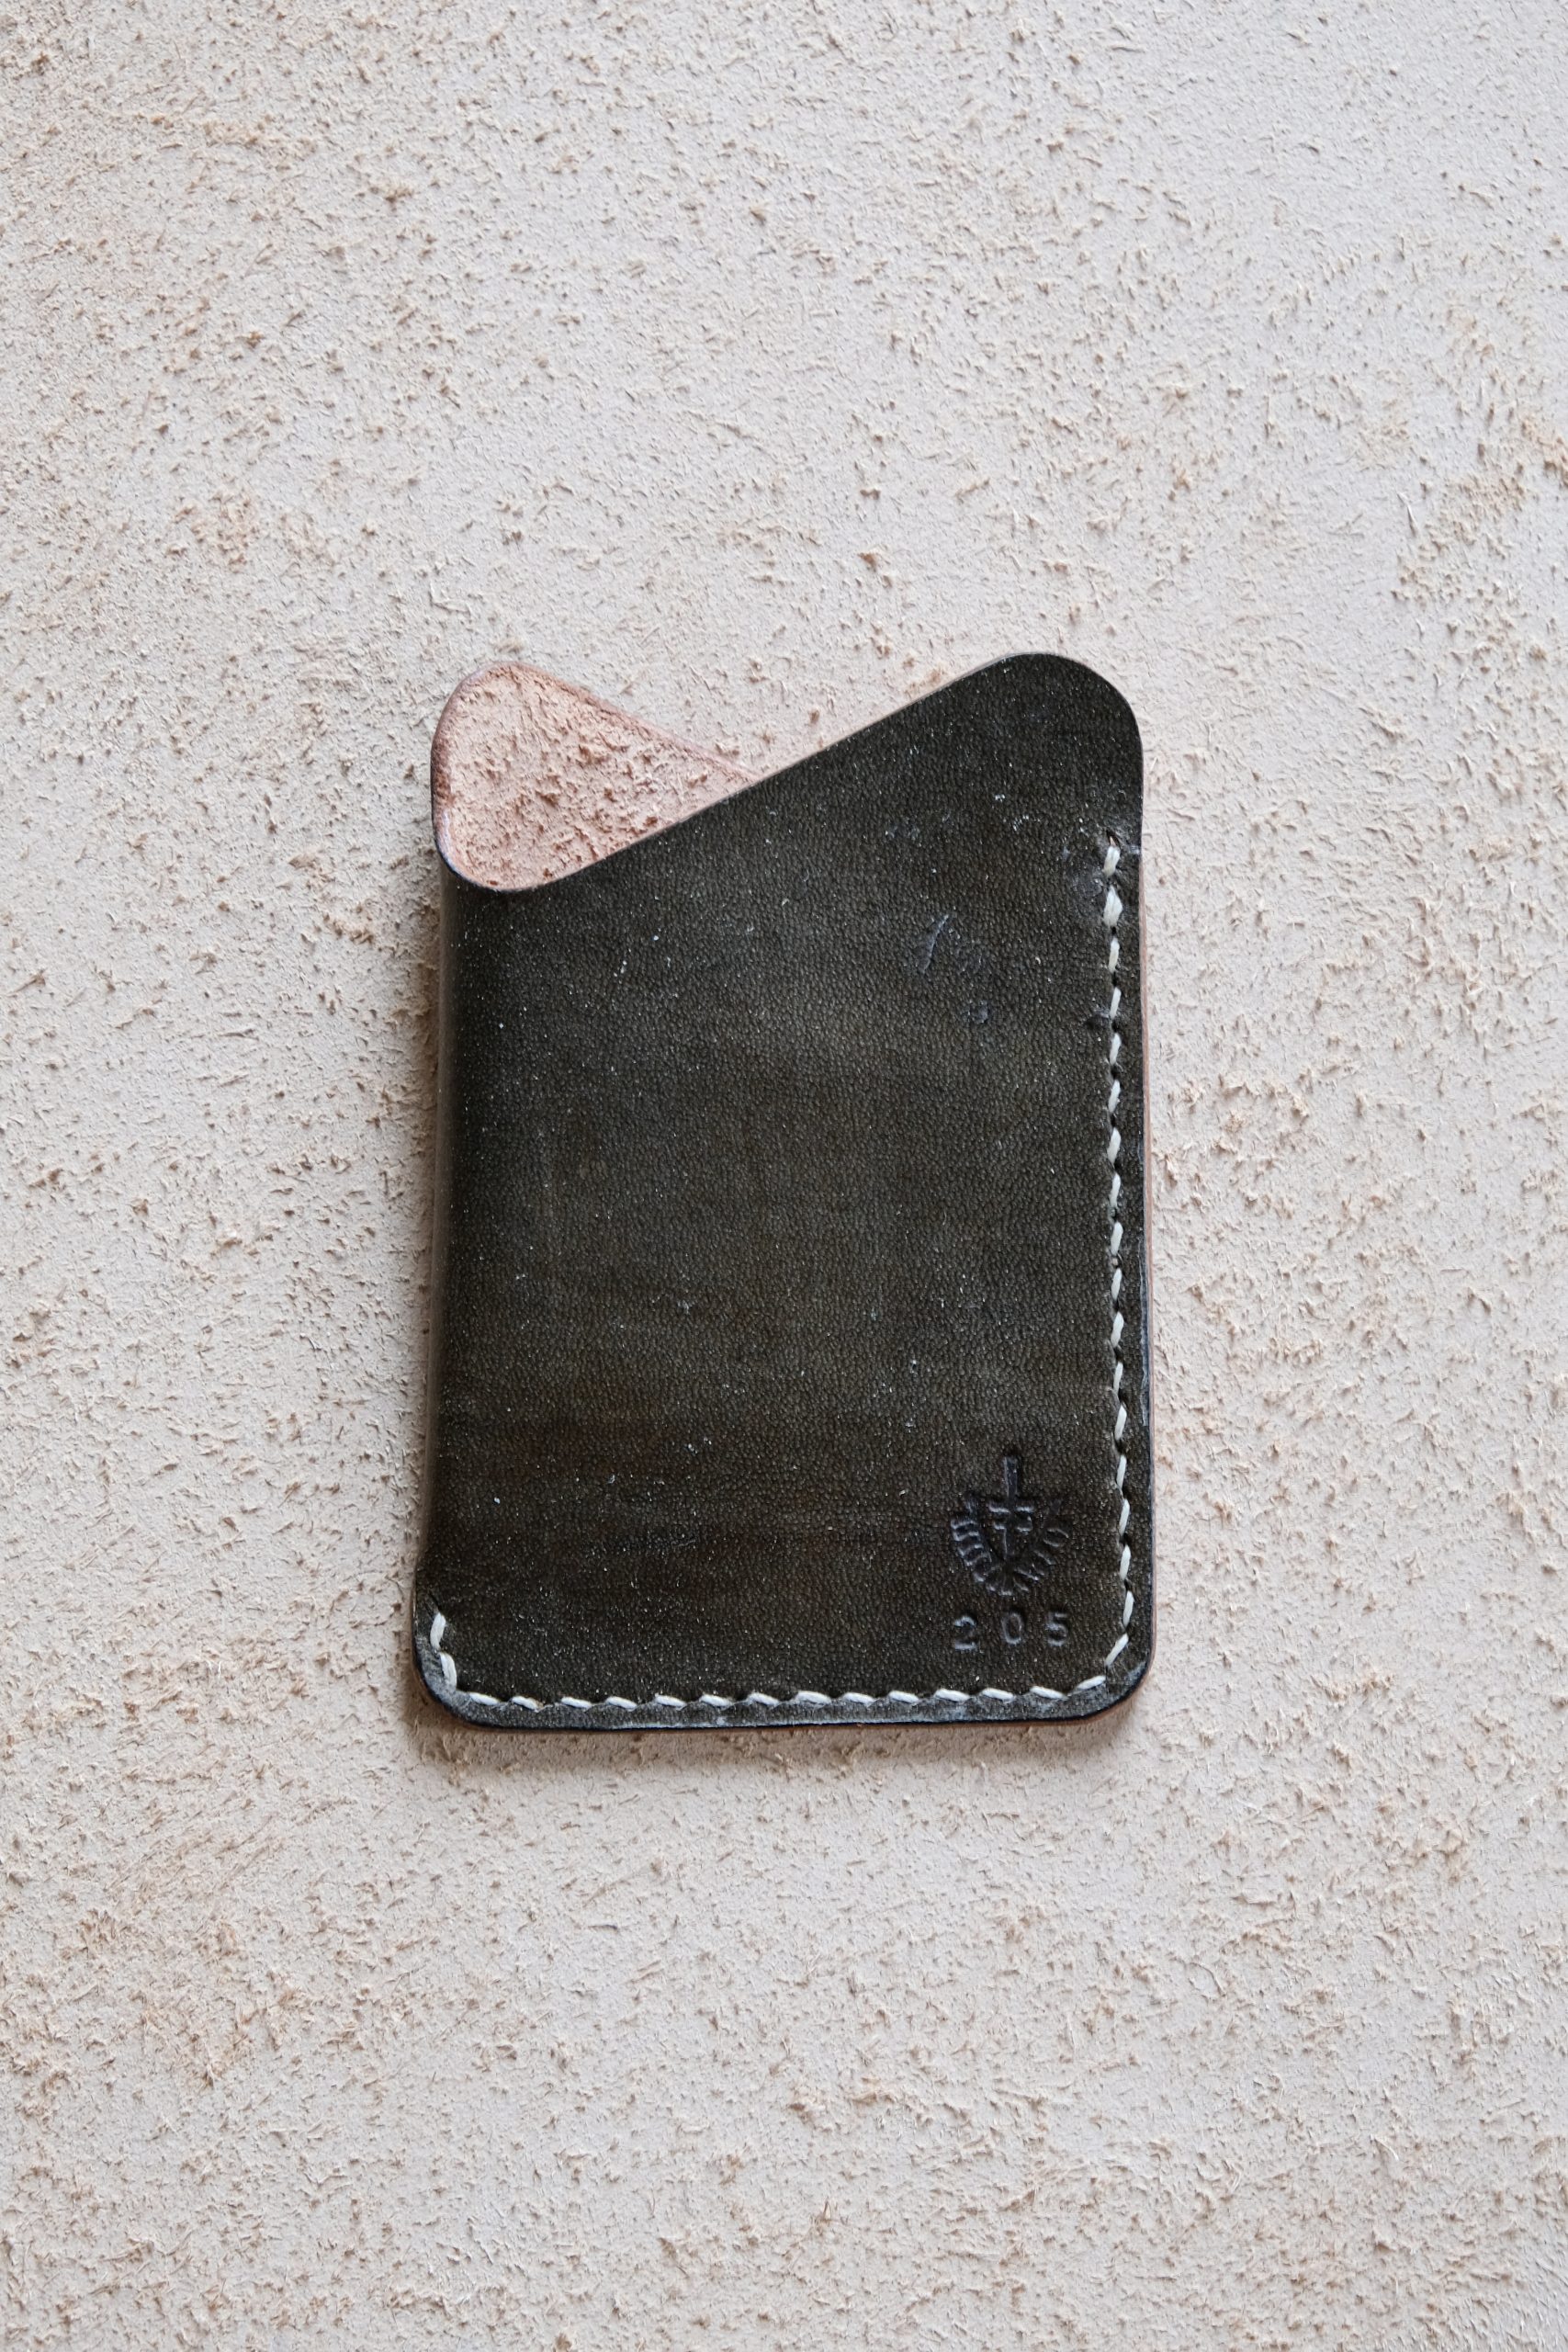 lerif designs leather wave cardholder vinegaroon on beige background